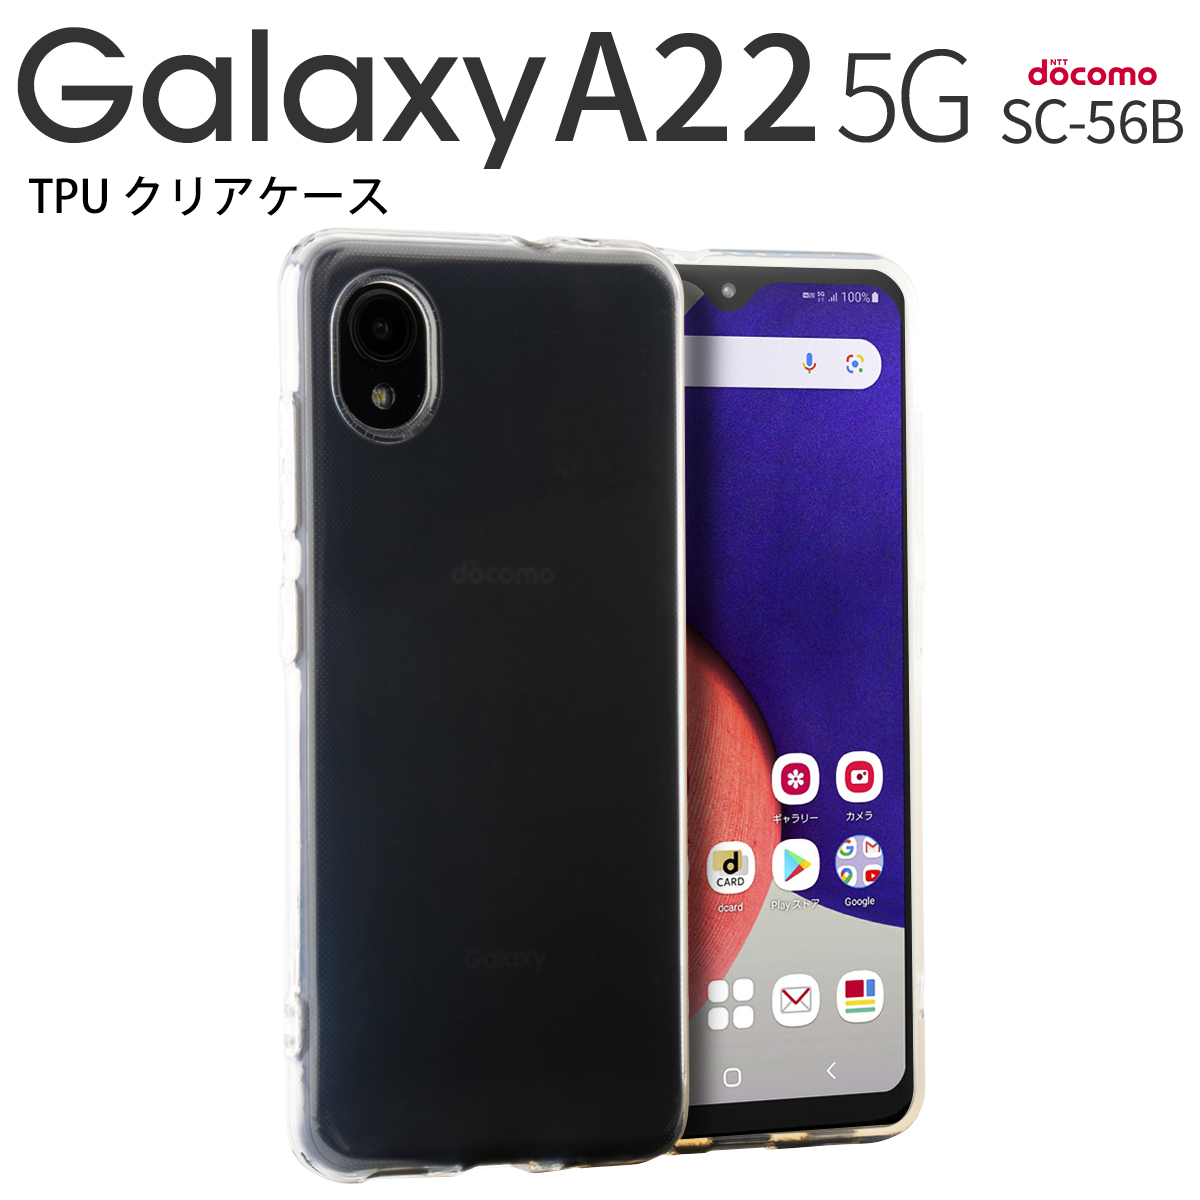 【税込】 高価値 TPU クリアケース Galaxy A22 5G SC-56B maquinasdelavaeseca.com.br maquinasdelavaeseca.com.br